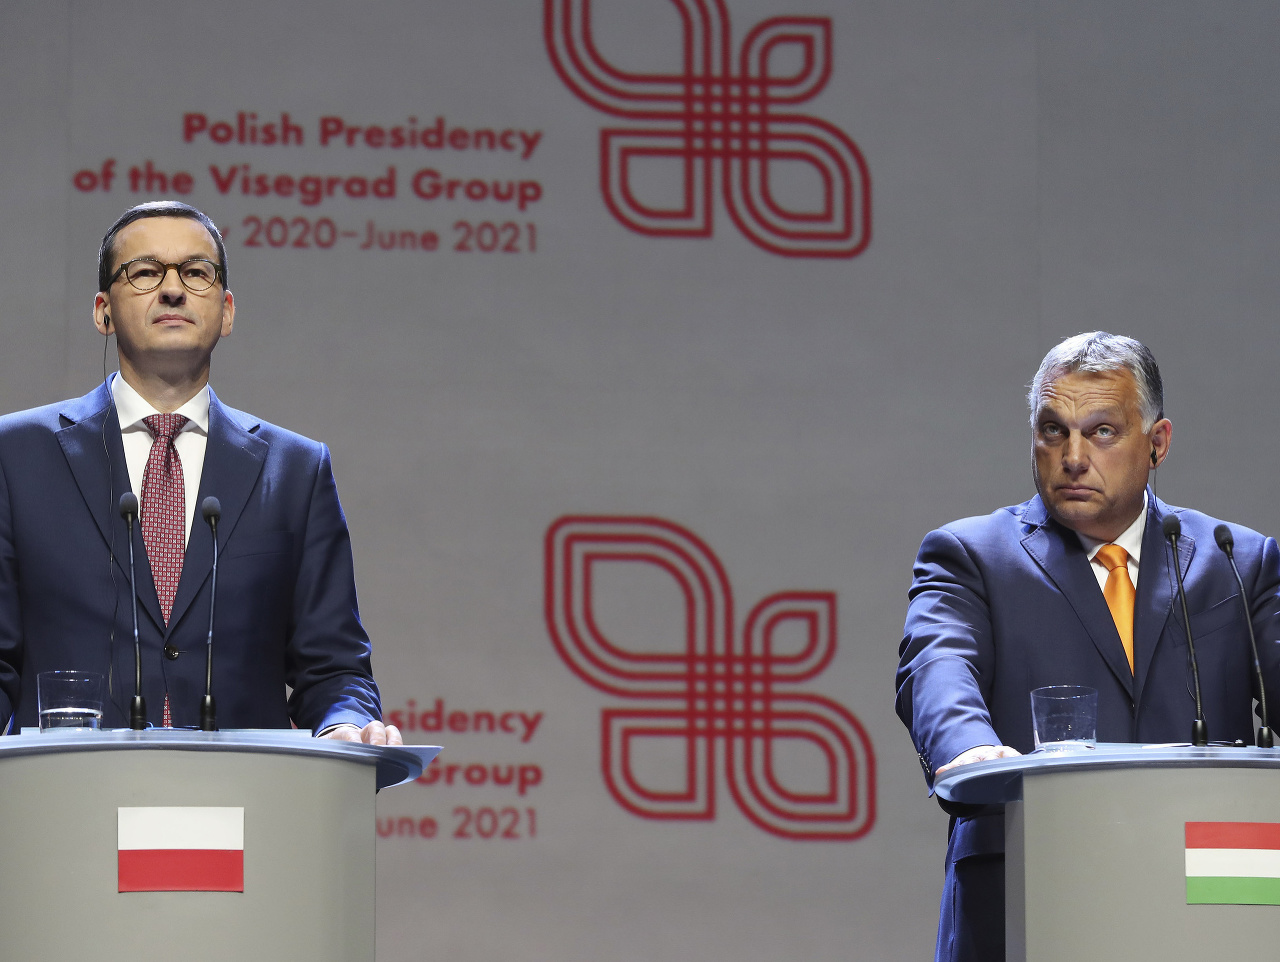 Mateusz Morawiecki a Viktor Orbán